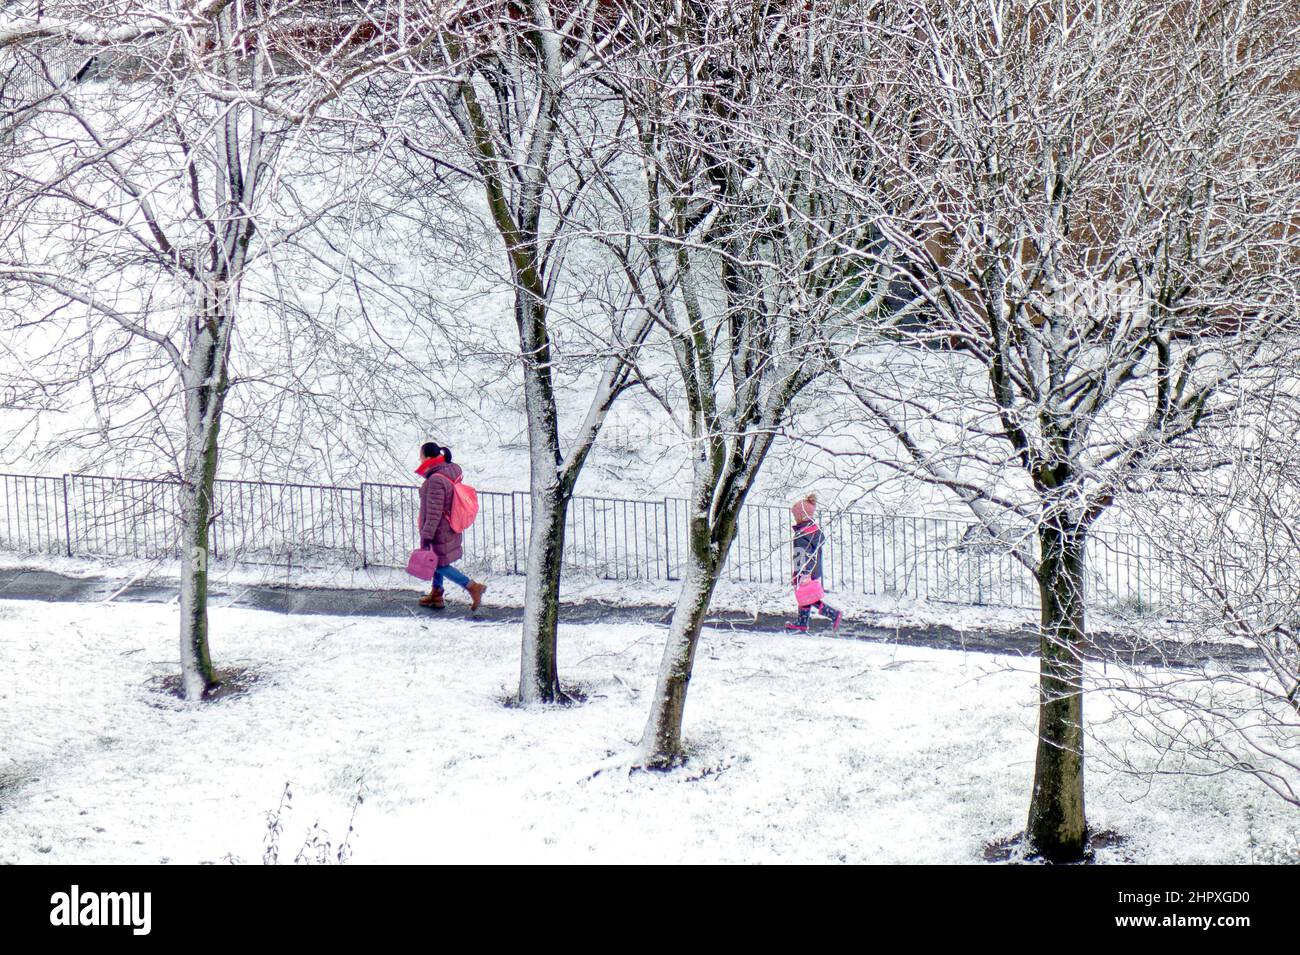 Glasgow, Scozia, Regno Unito 24th febbraio 2022. UK Meteo: : Storm Gladys colpisce con venti e pioggia elevati nella città di ieri girando a nevicata pesante durante la notte che ha visto la gente del posto svegliarsi ad una scena wonderland invernale come la città è coperta di neve. Credit Gerard Ferry/Alamy Live News Foto Stock